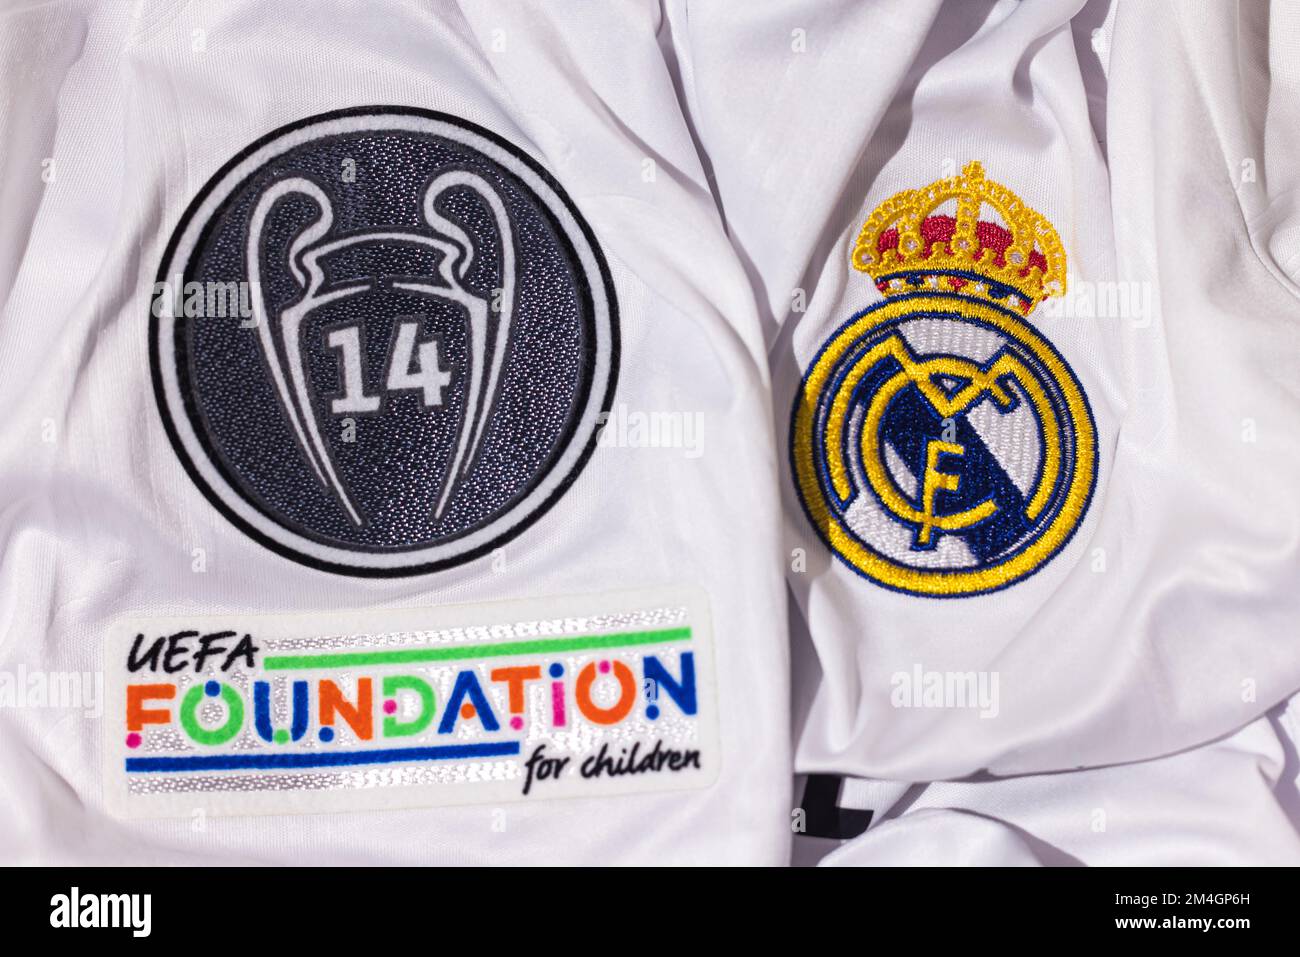 Escudo en la camiseta blanca del Real Madrid Fútbol Club, junto con el escudo de 14 Copas de Europa y el signo de la Fundación UEFA. UEFA Champions League f Foto de stock